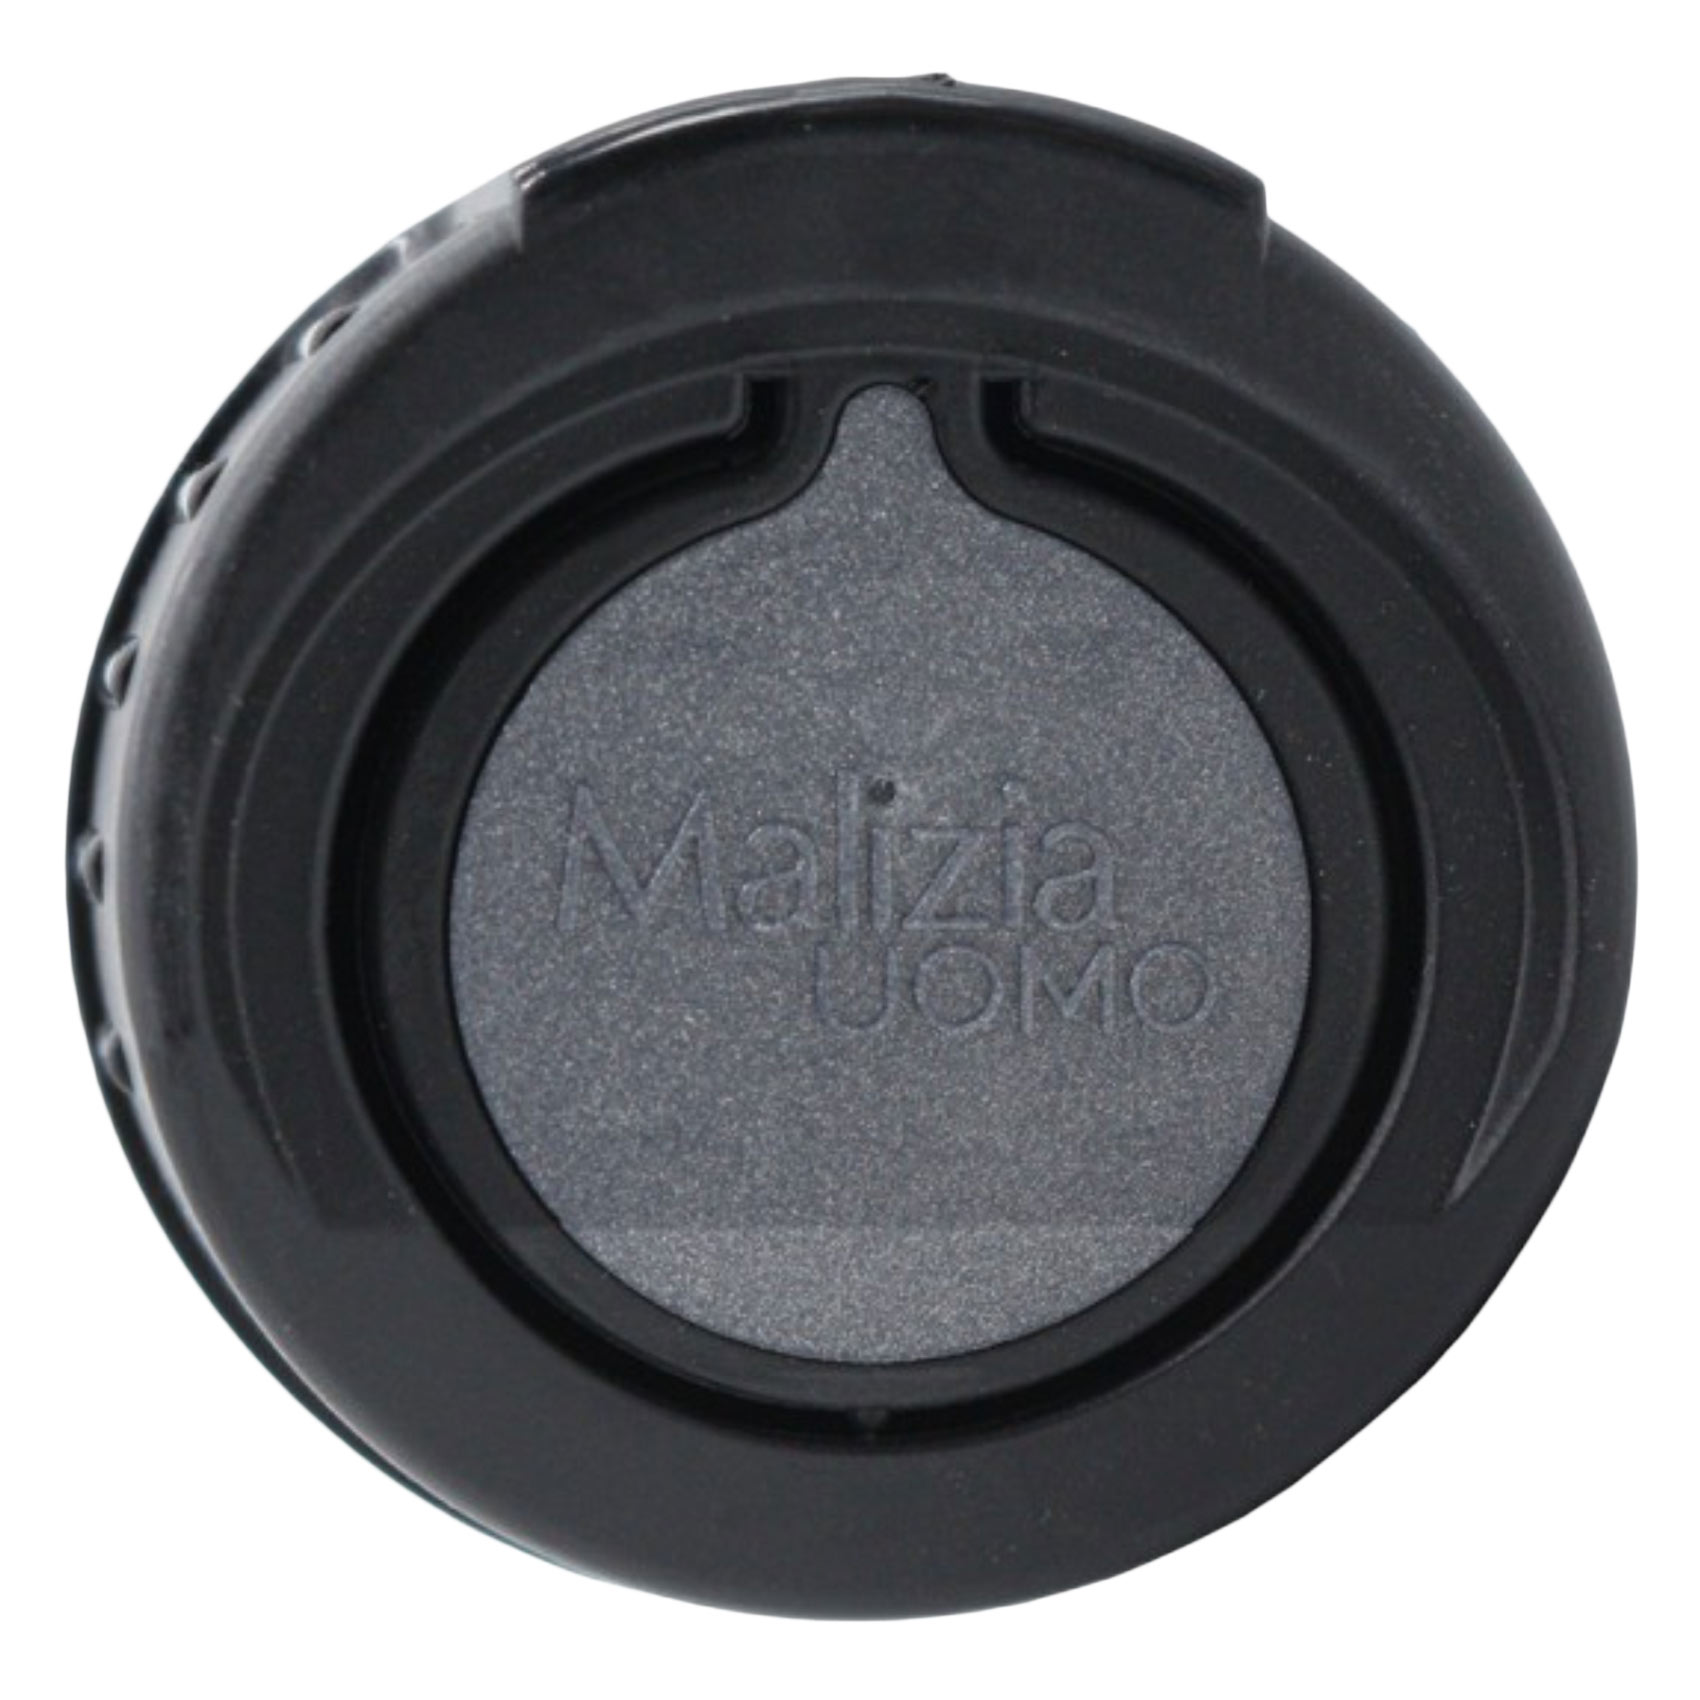 Malizia Uomo Sound Deodorant Spray 150ml + 50ml Free